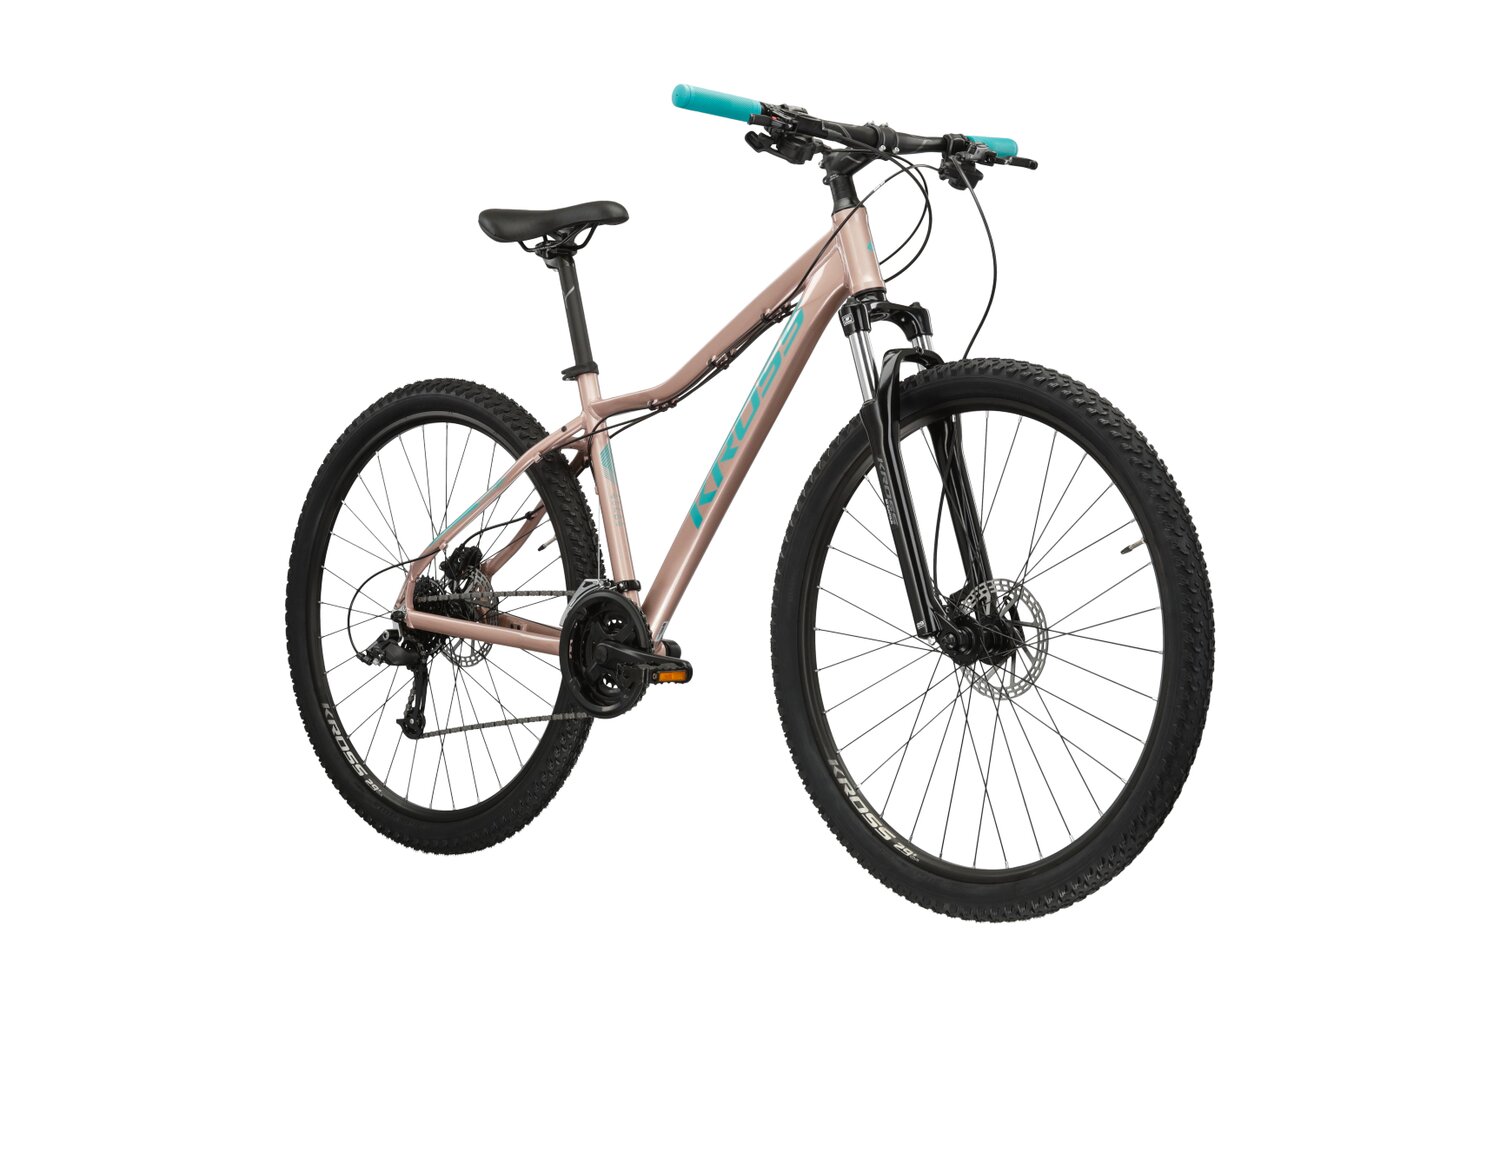 Damski rower górski MTB Woman Kross Lea 5.0 MS na aluminiowej ramie w kolorze różowozłotym wyposażony w osprzęt Microshift 